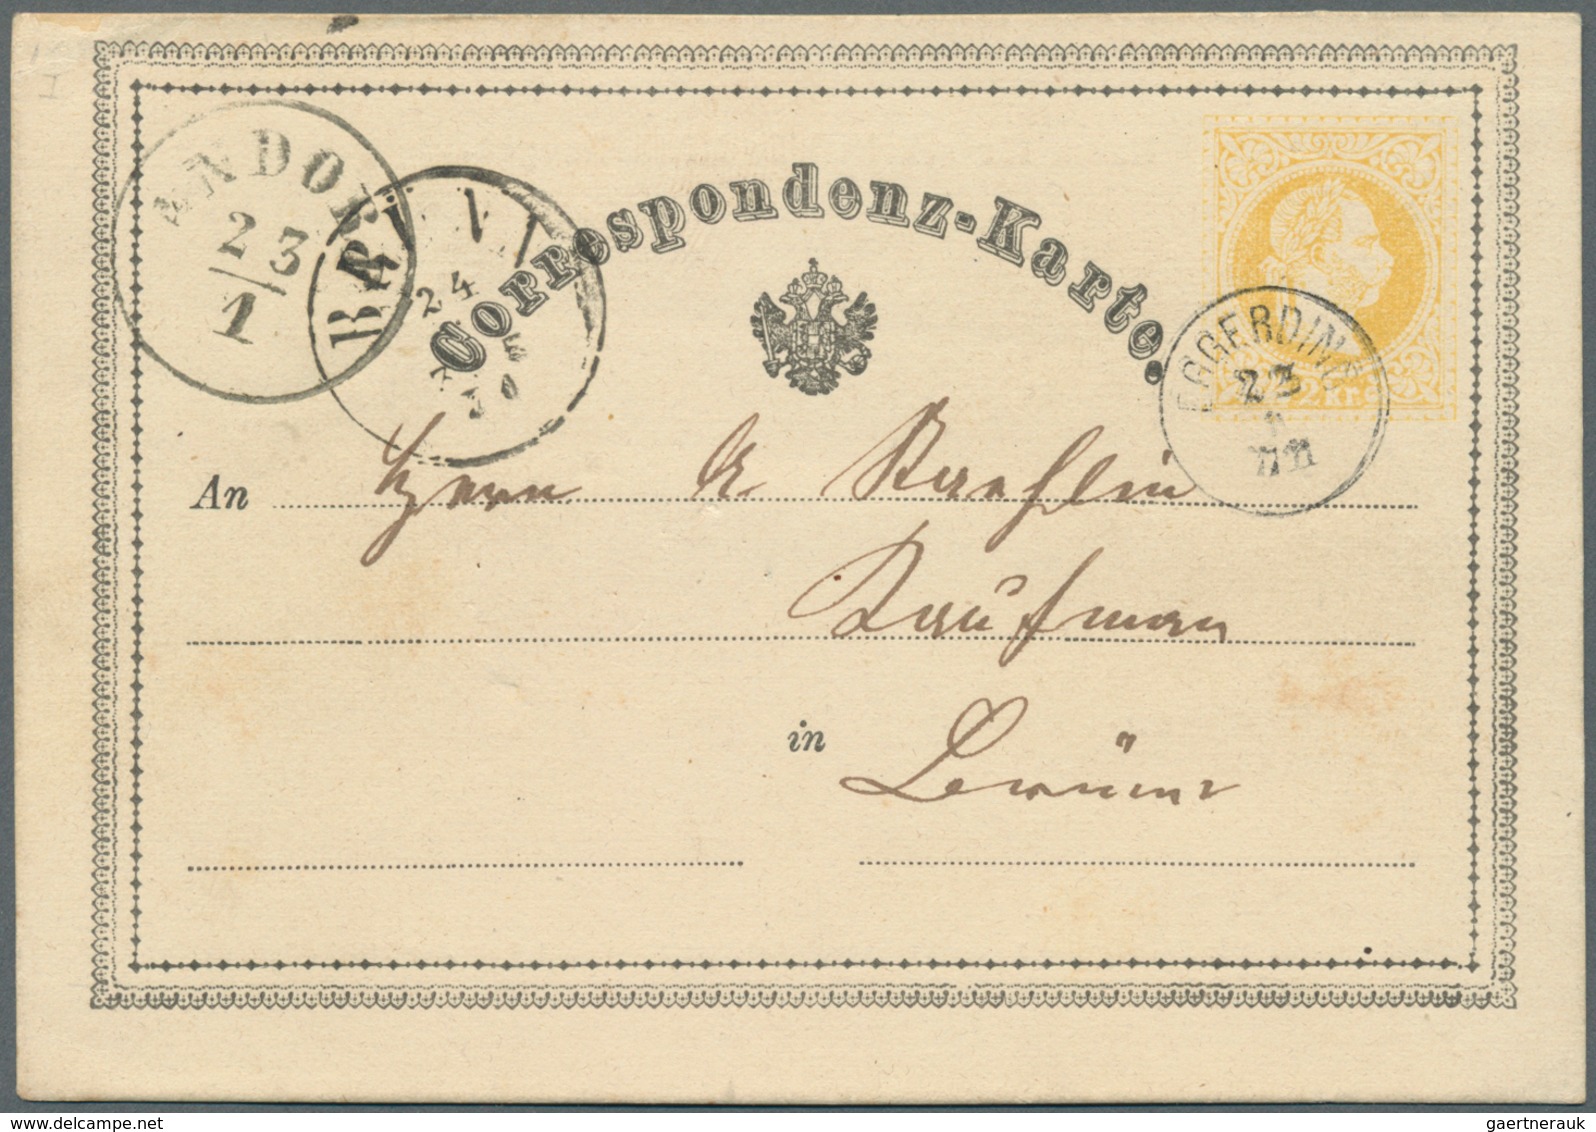 15680 Österreich - Ganzsachen: 1870/1876, 13 Correspondenz-Karten 2 Kr. gelb mit teils unterschiedl. Typen